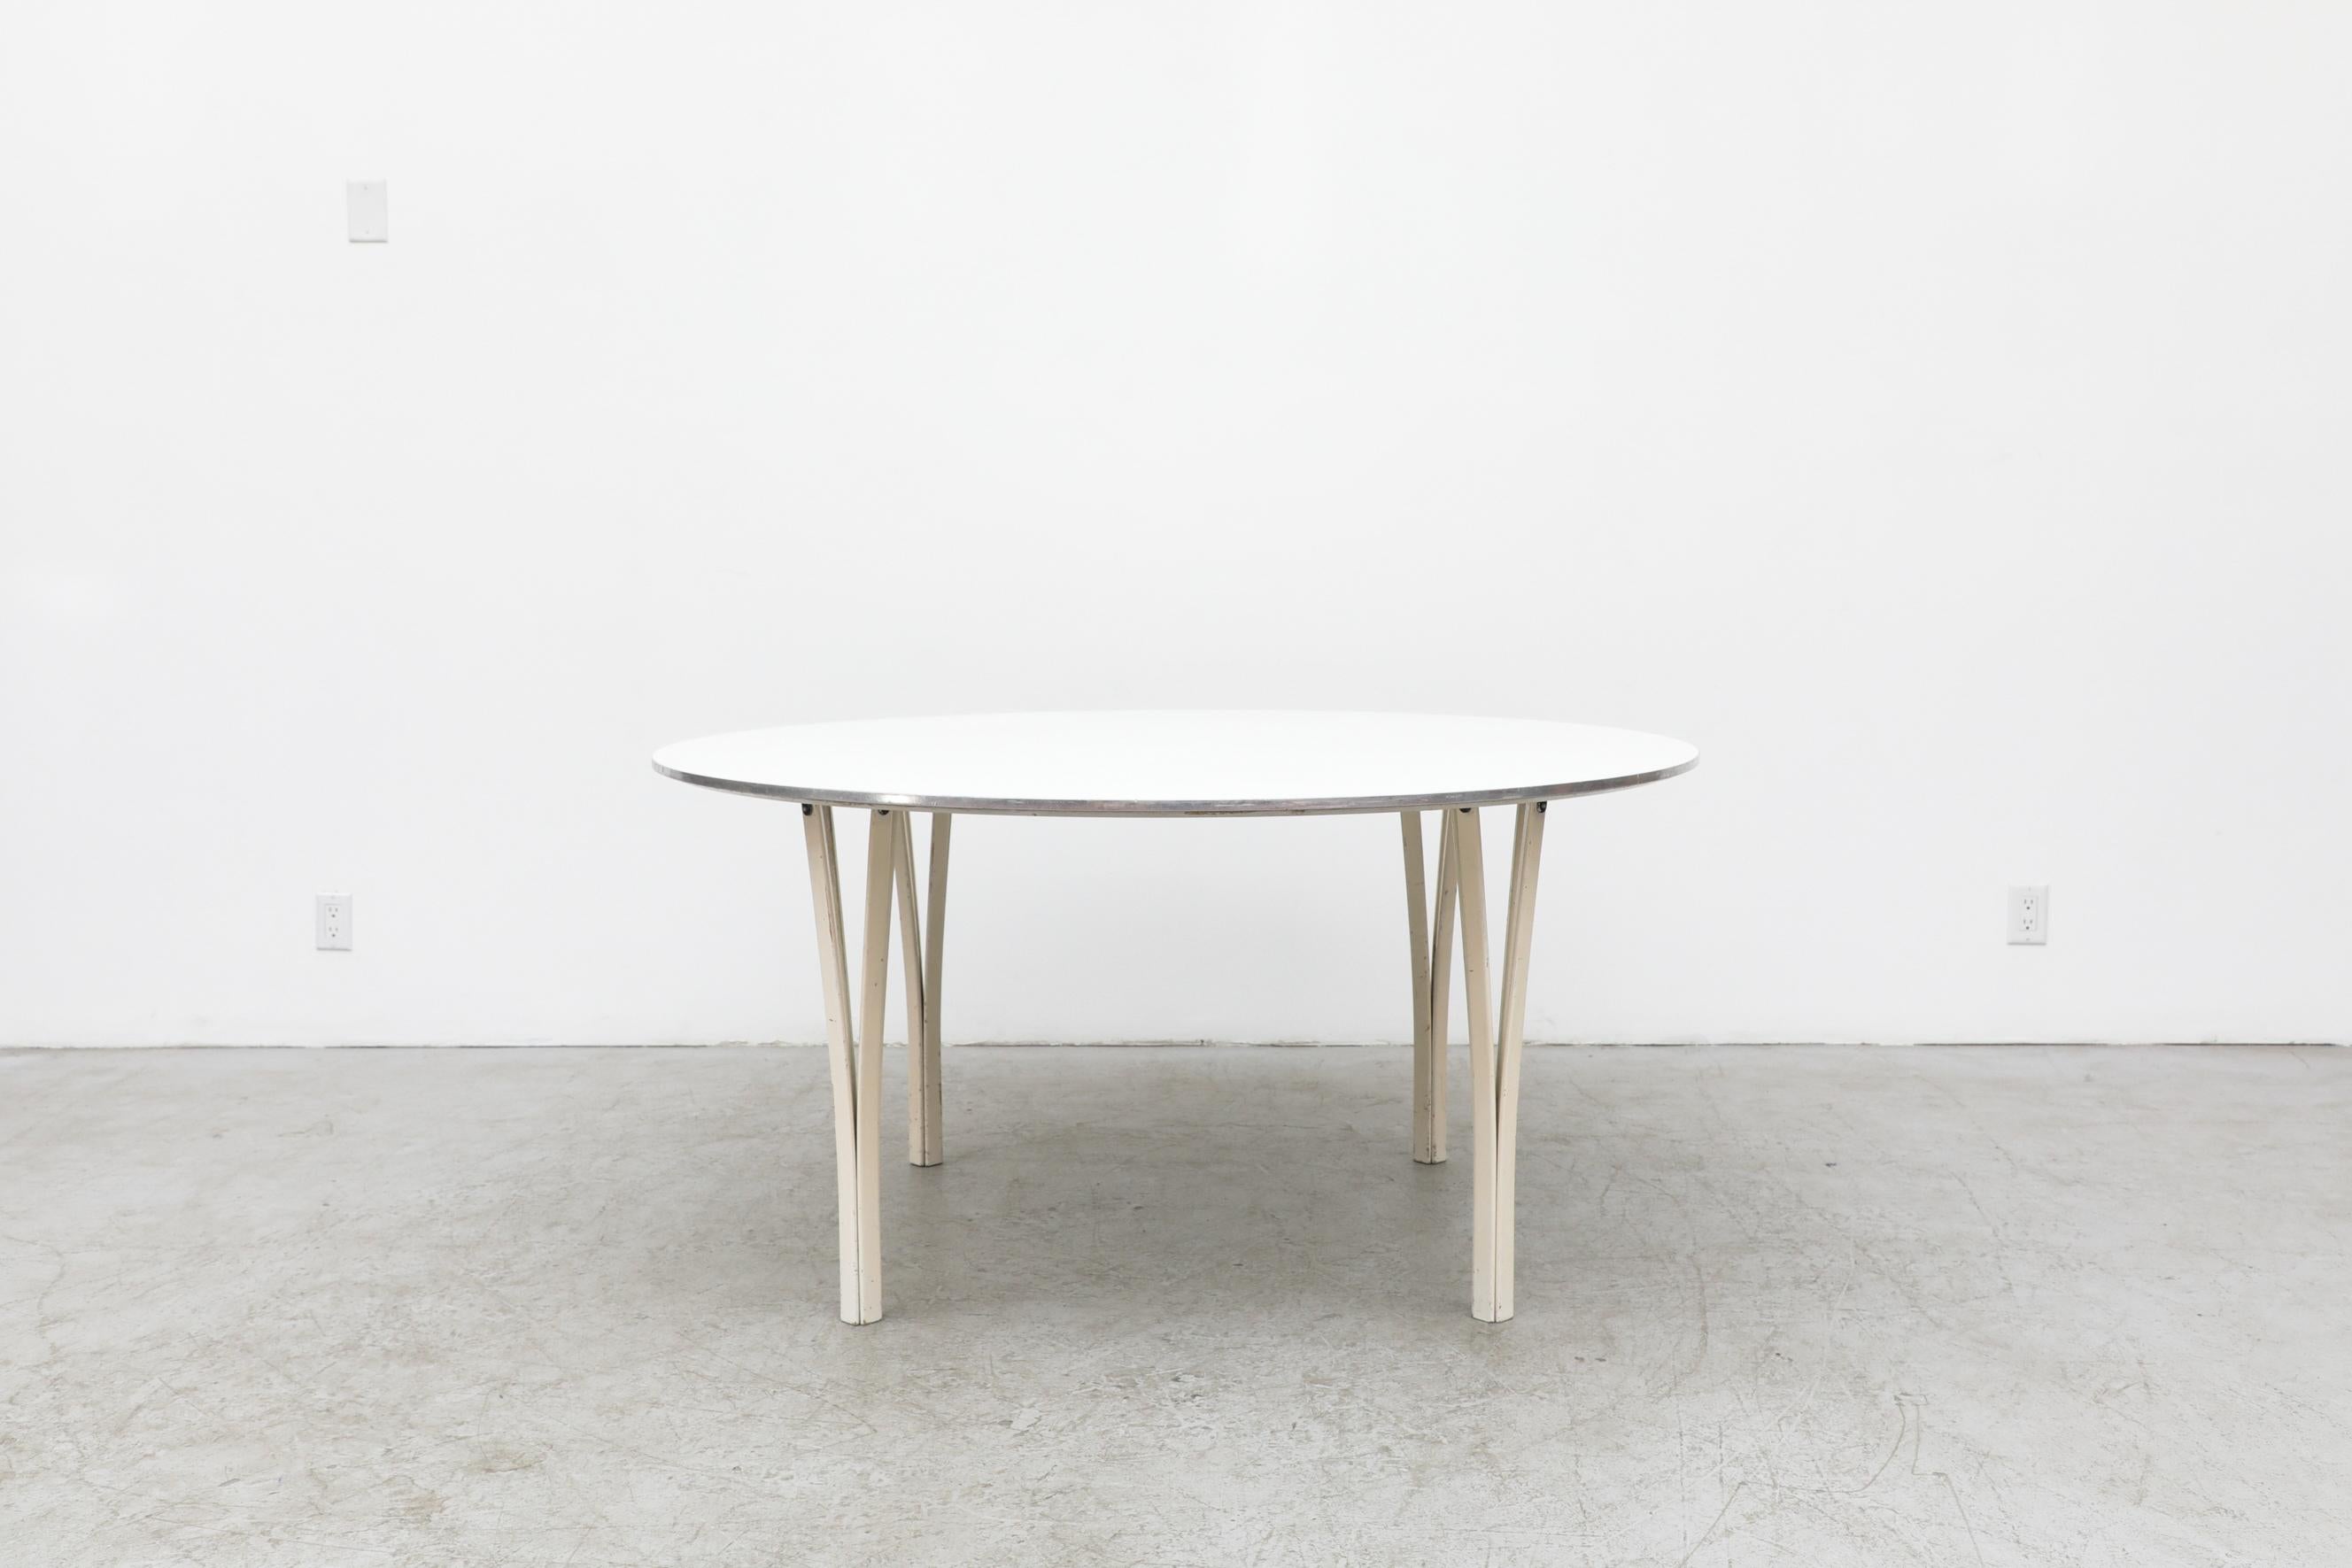 Table de salle à manger ou table centrale ronde Super Ellipse de Piet Hein et Bruno Mathsson pour Fritz Hansen. En état d'origine avec des éraflures visibles sur la laque des pieds ainsi qu'une usure visible de la bande de métal. L'usure est